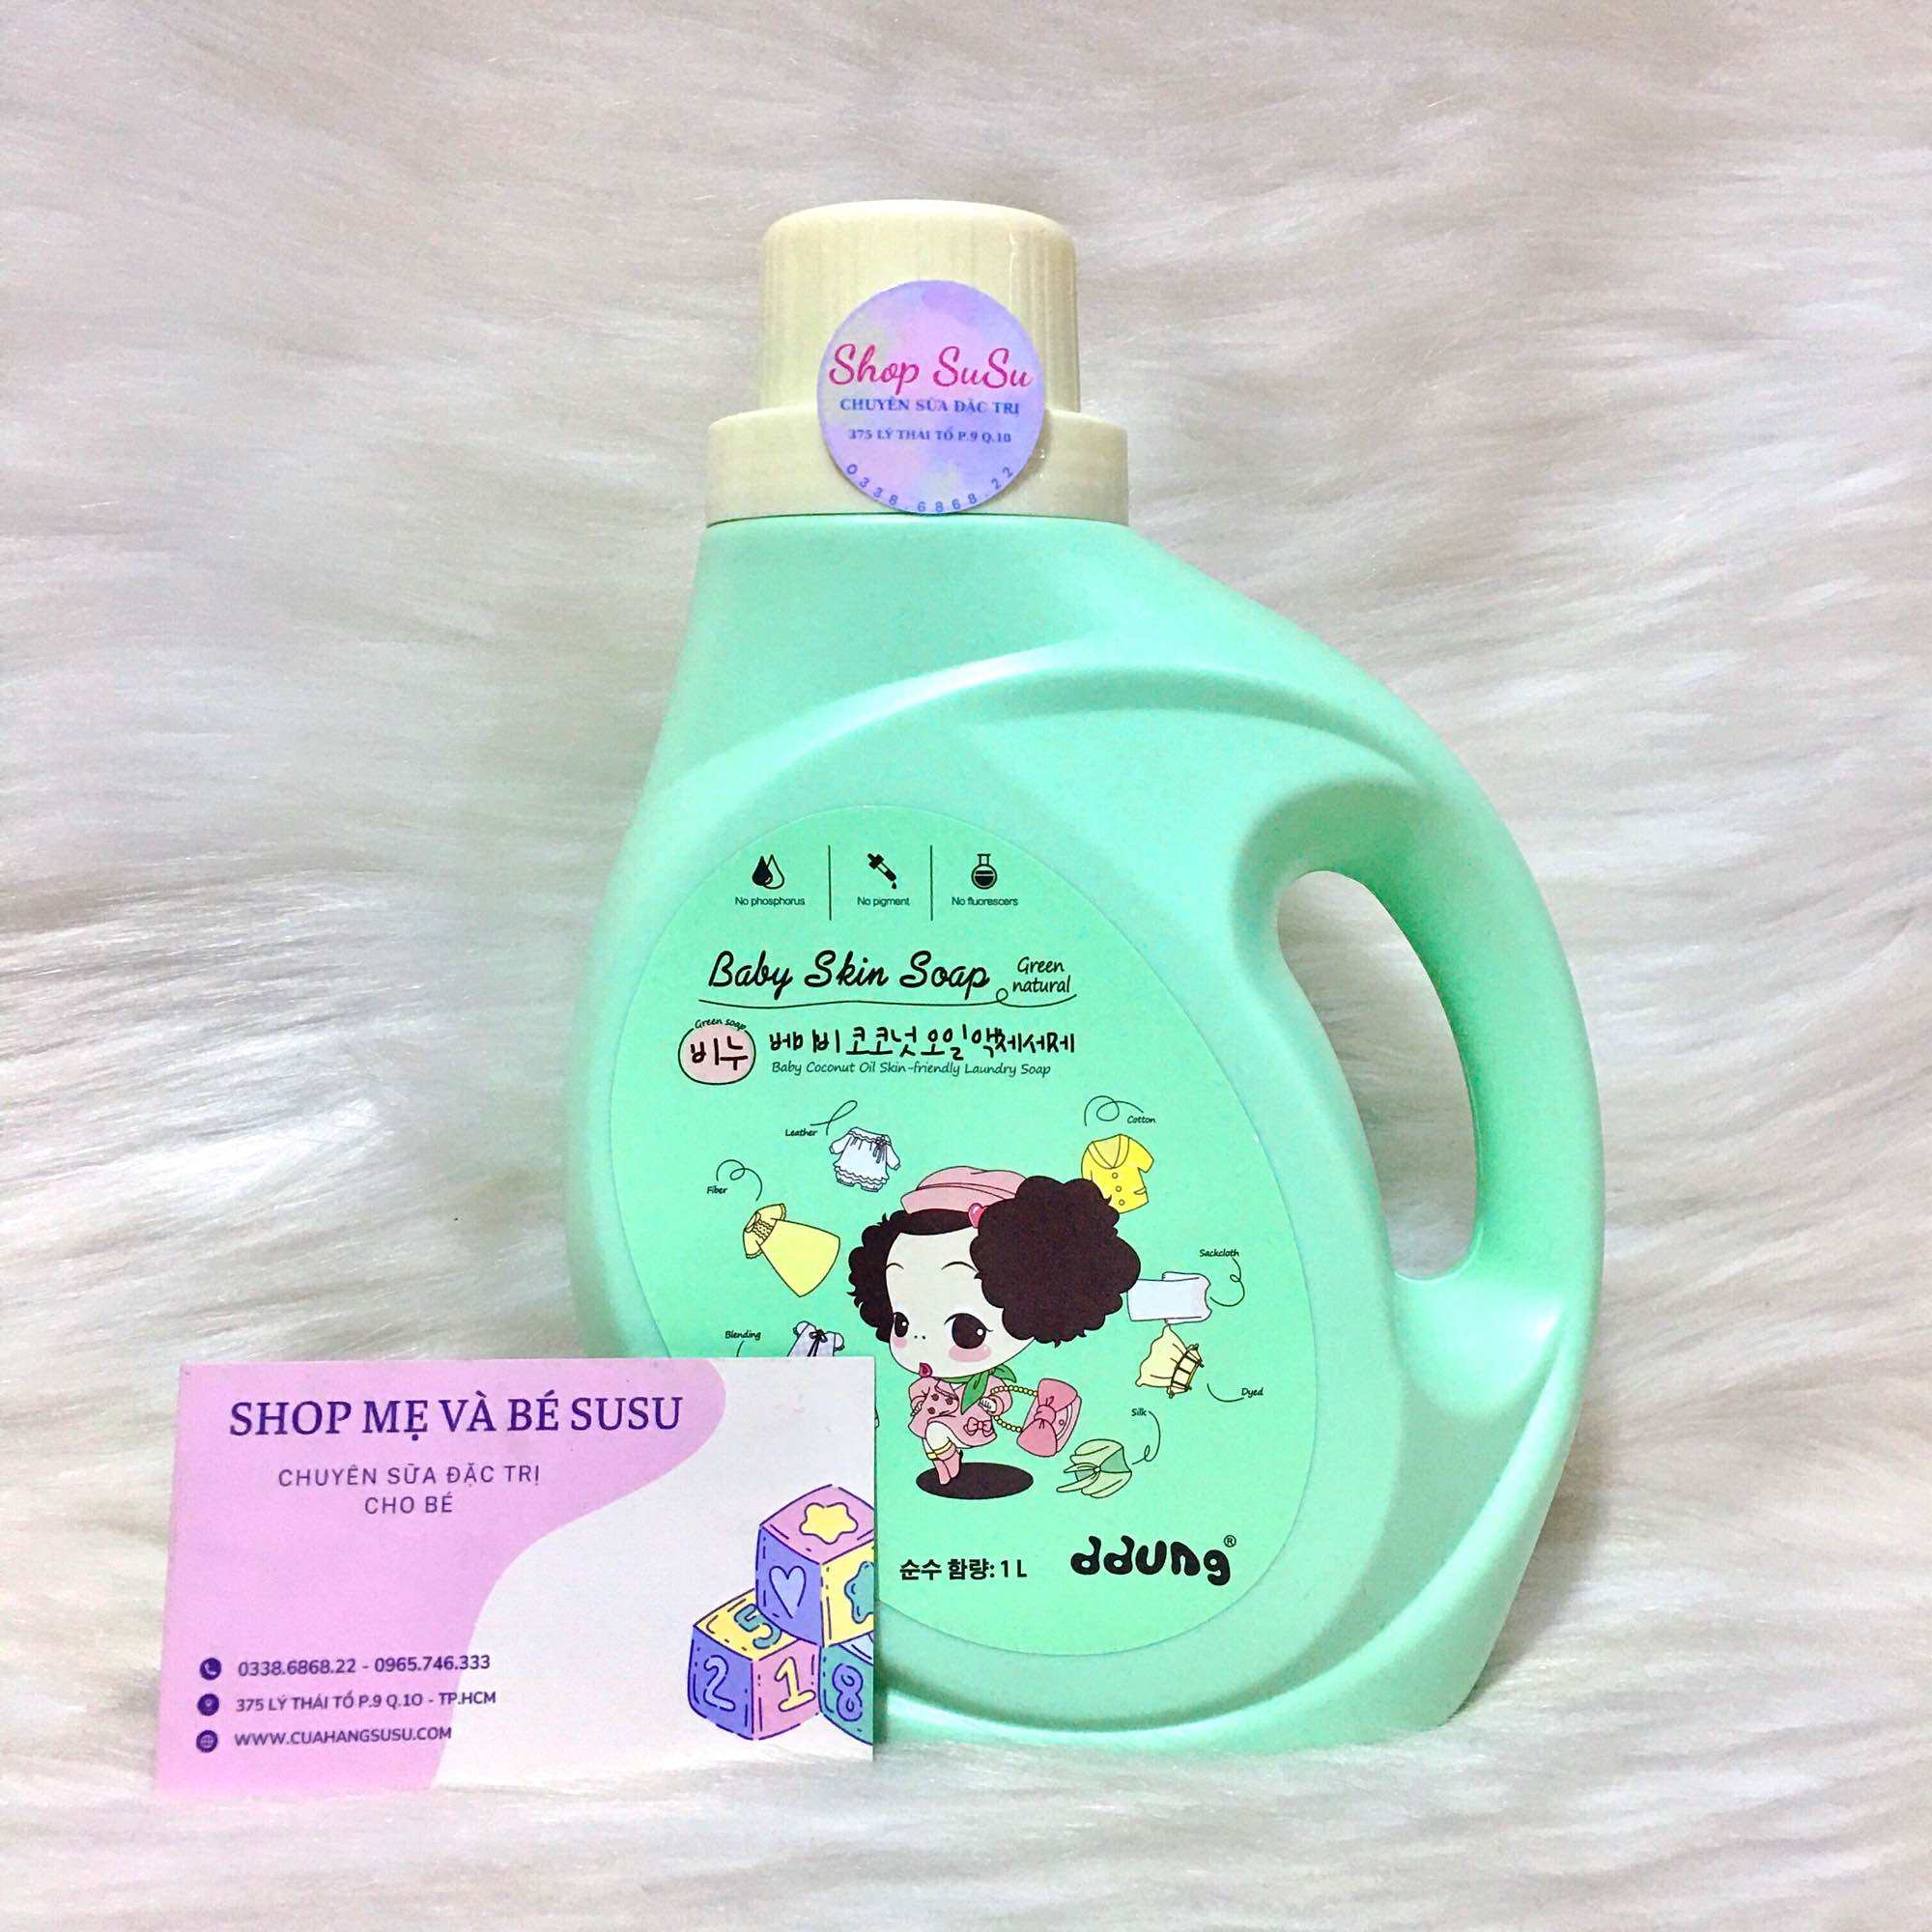 Nước giặt xà phòng cho bé ddung là thương hiệu nước giặt của Hàn Quốc